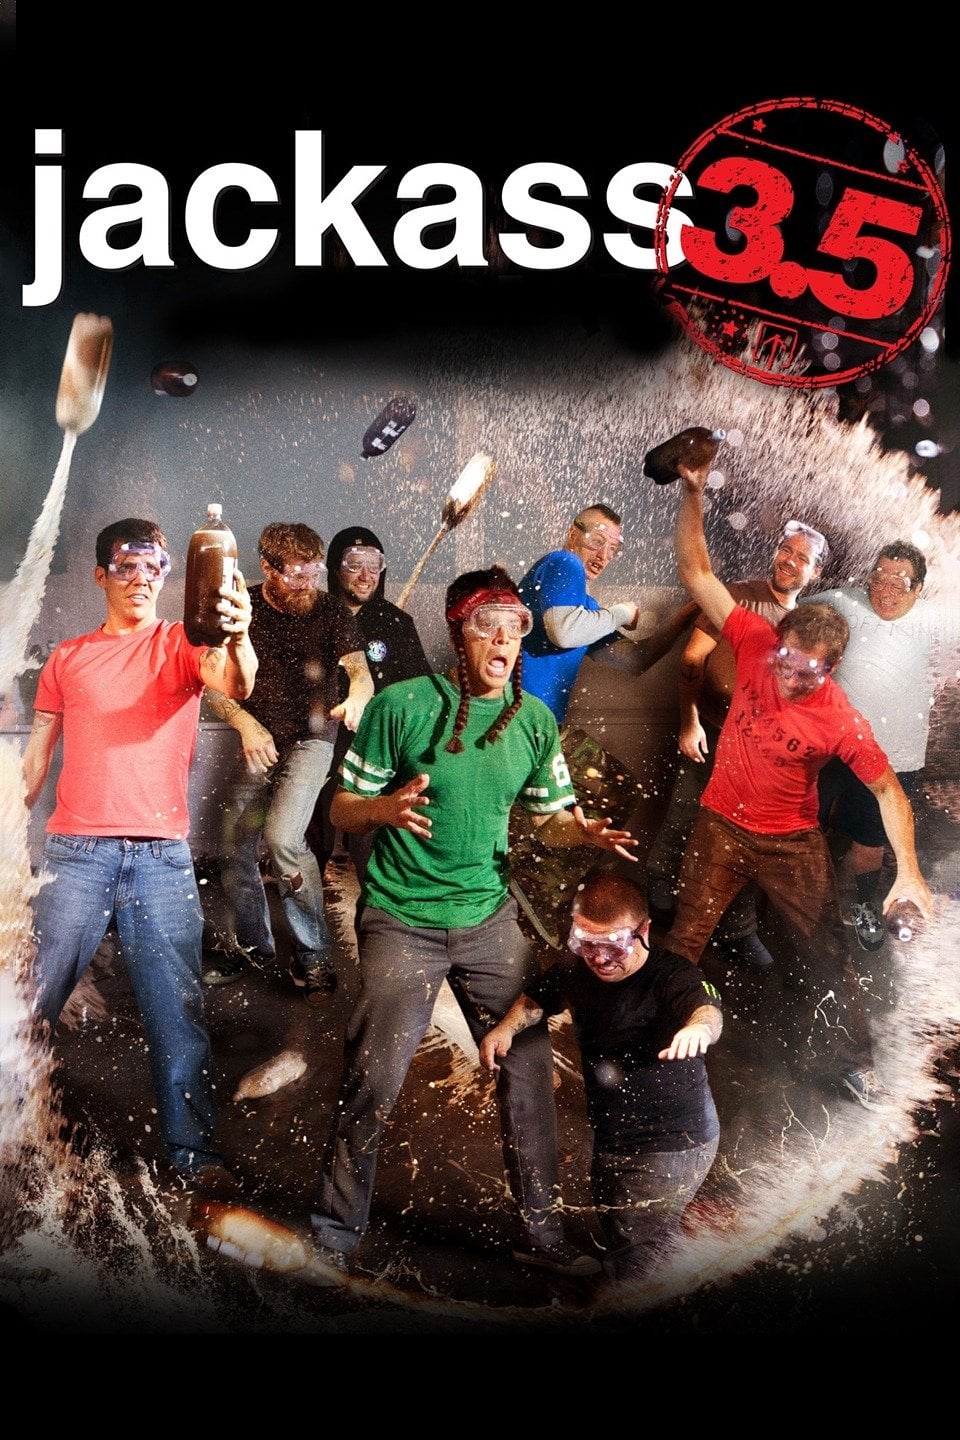 Jackass 3.5 [HD] (2011)